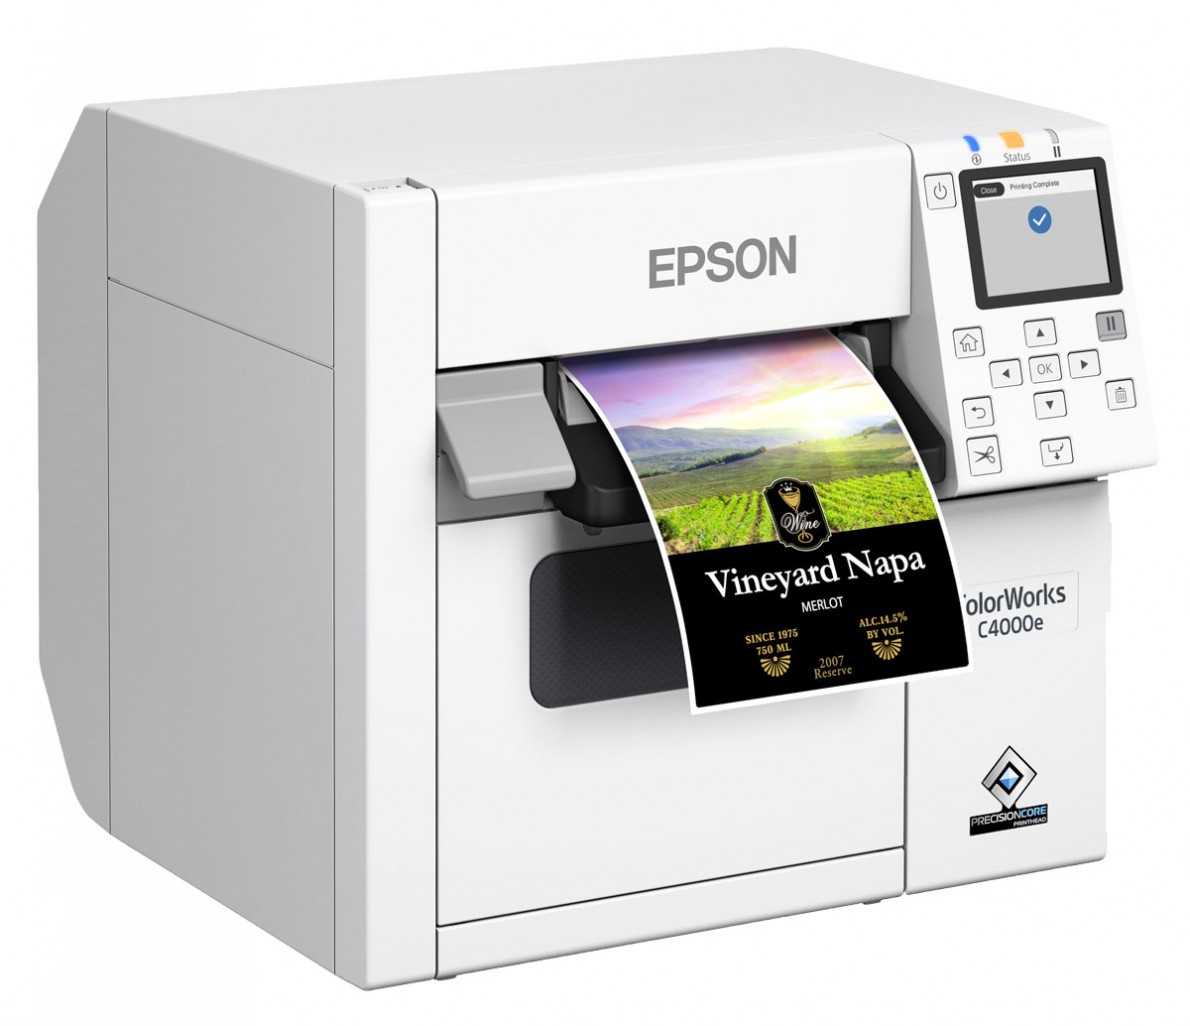 Farbetikettendrucker Epson C4000e mit einem farbigen Weinetikett. Ein Display und verschiedene Tasten zur Bedienung.